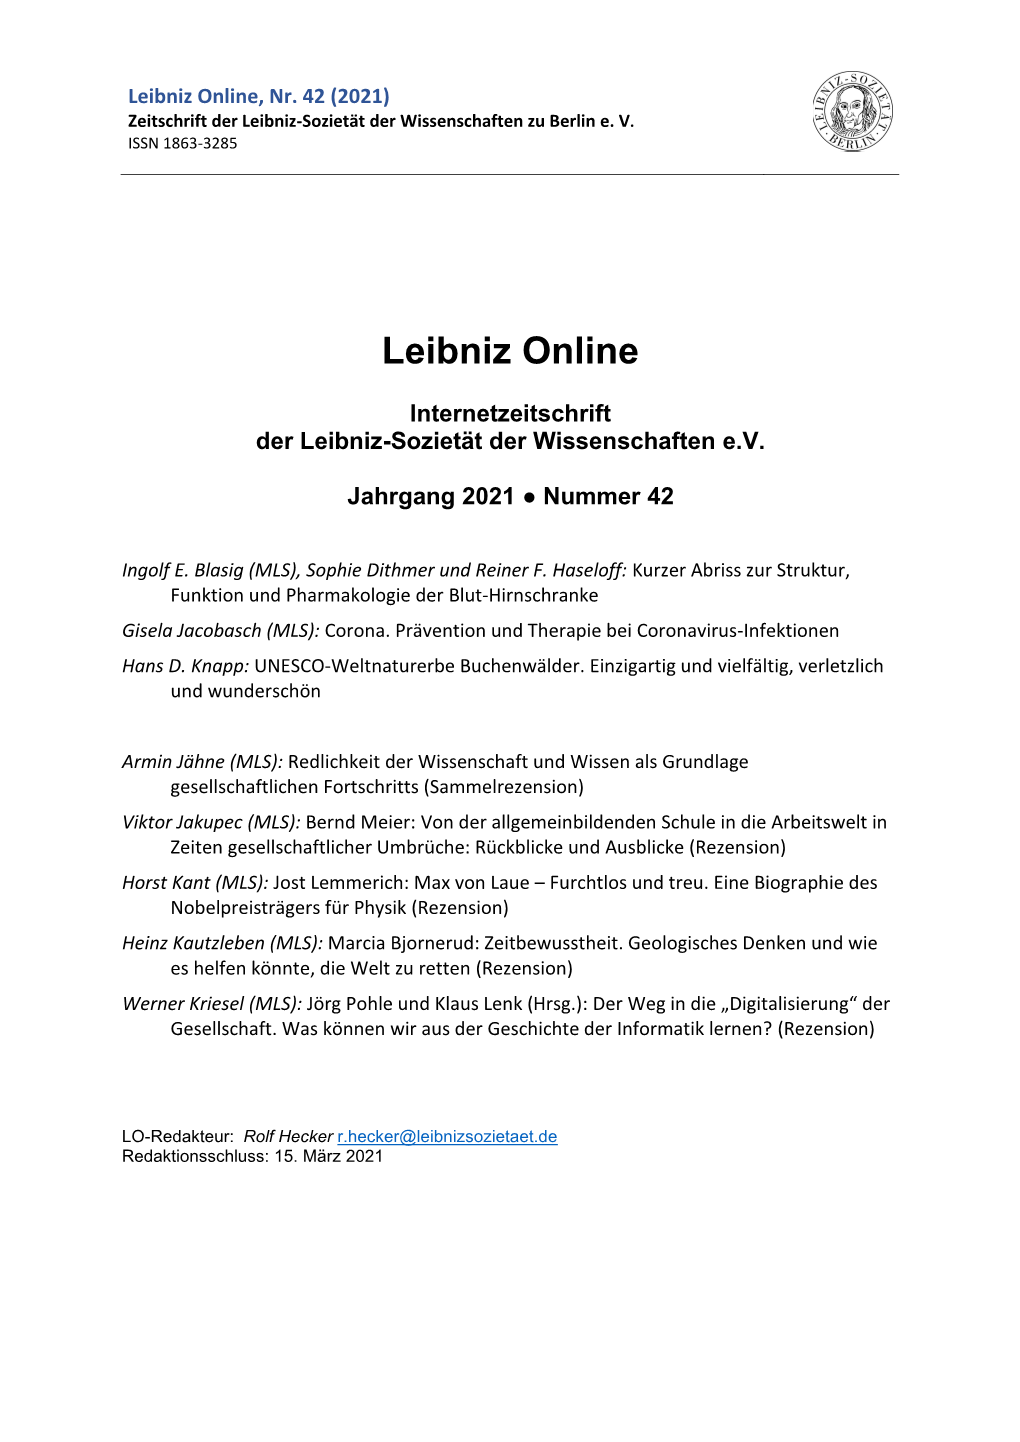 Leibniz Online 42-2021 Gesamtdatei